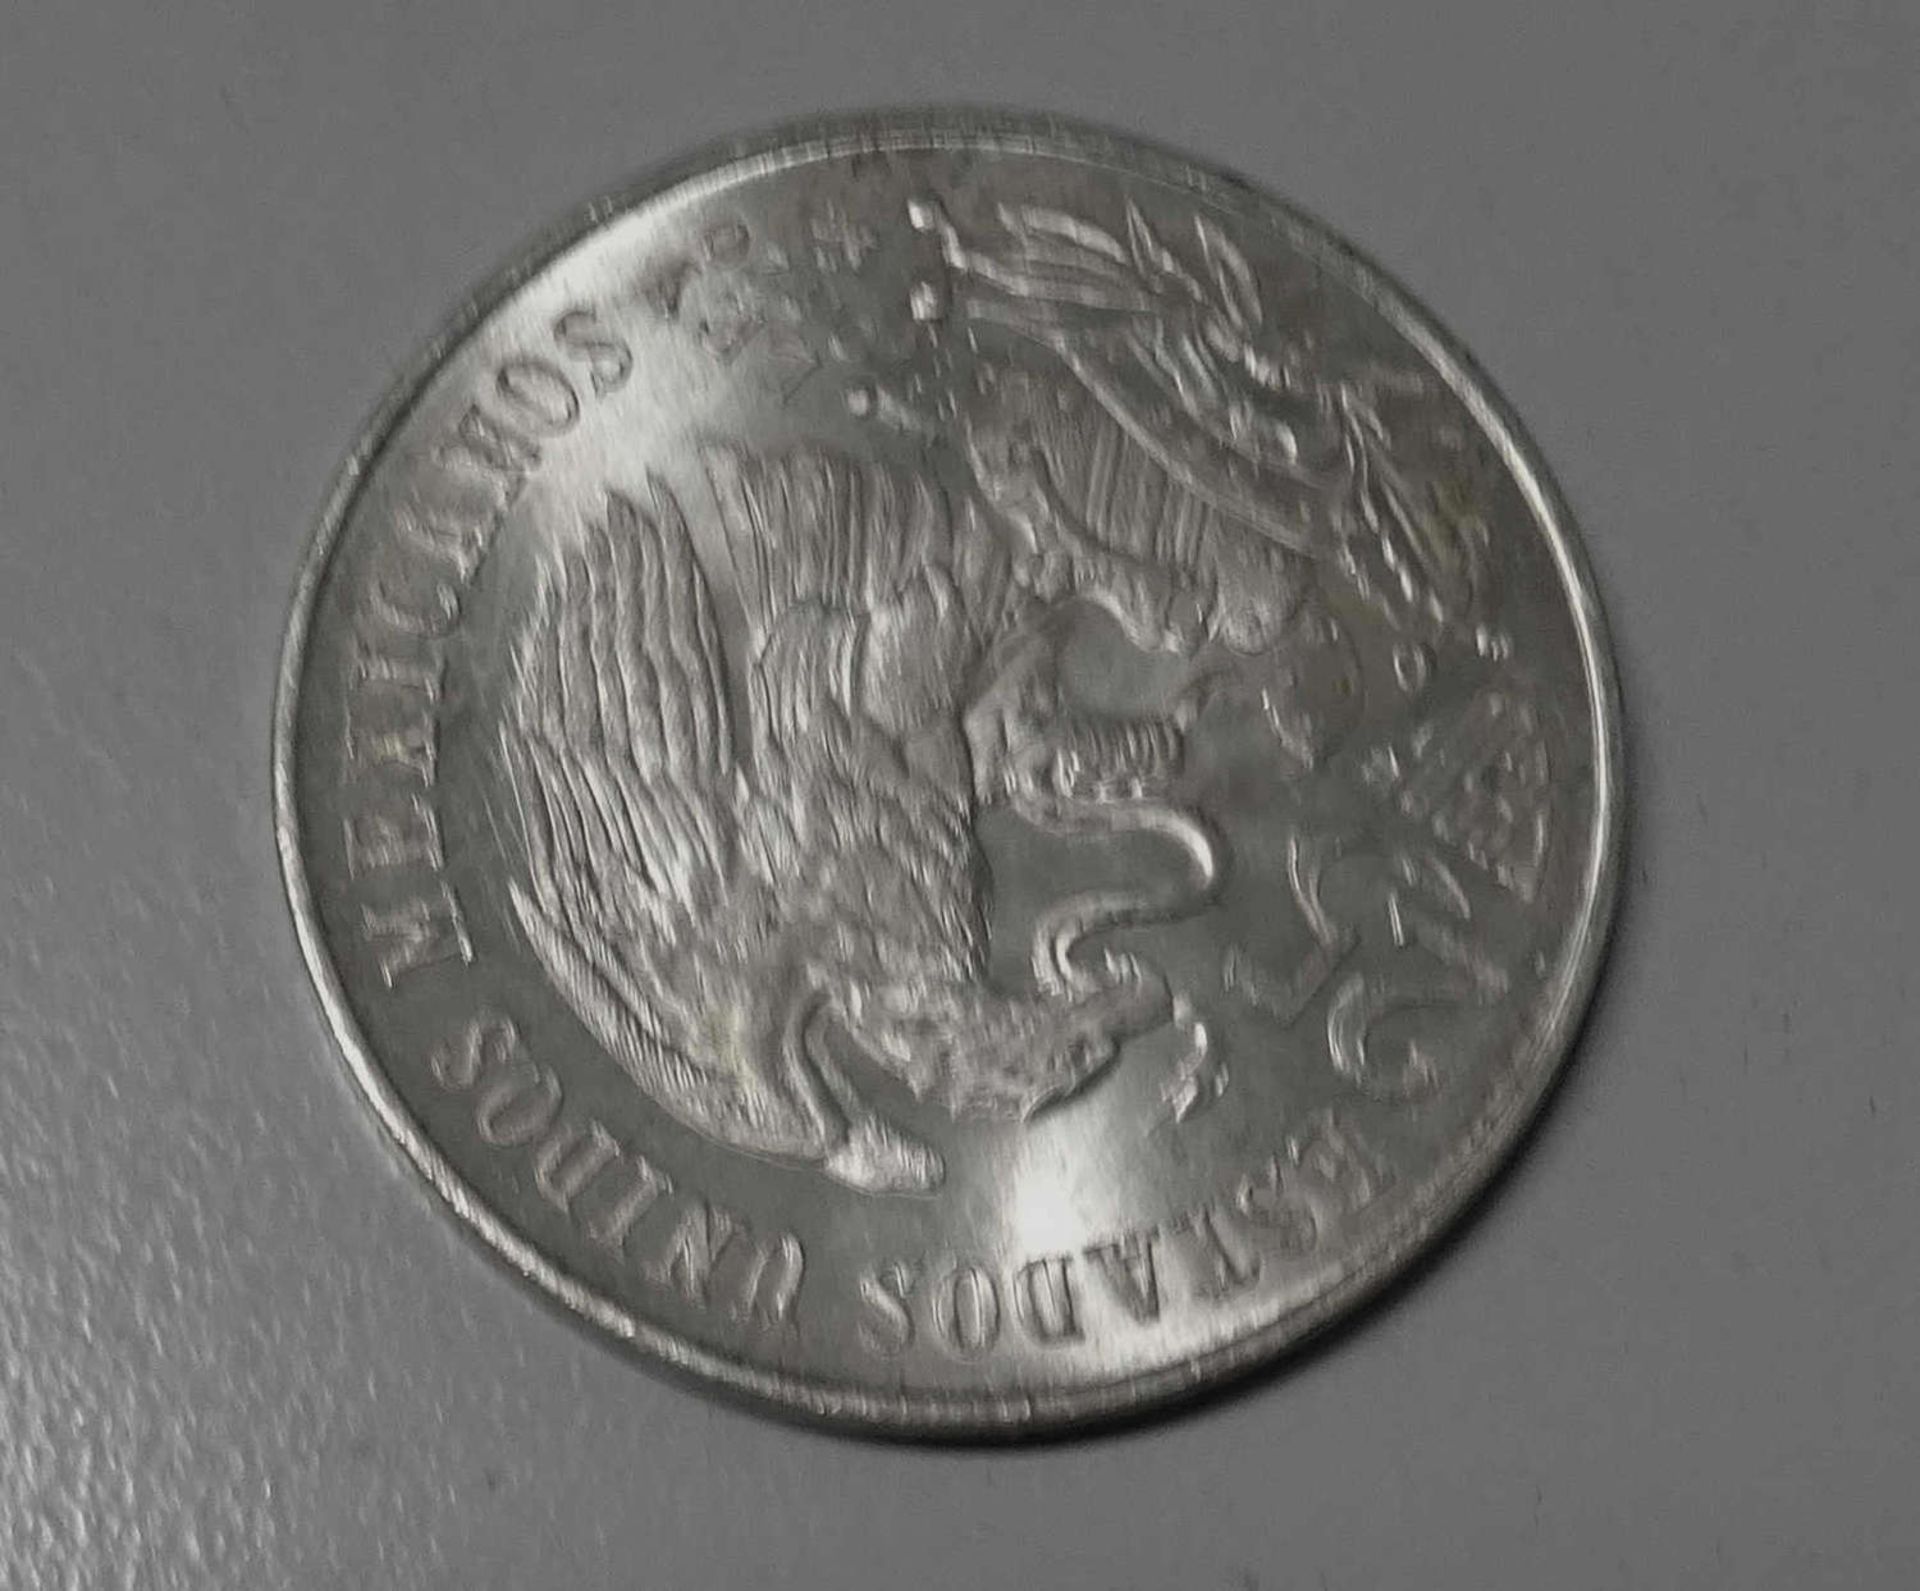 Mexico Silbermünze 1968. 25 Pesos "Olympische Spiele"Mexico silver coin 1968. 25 pesos "Olympic